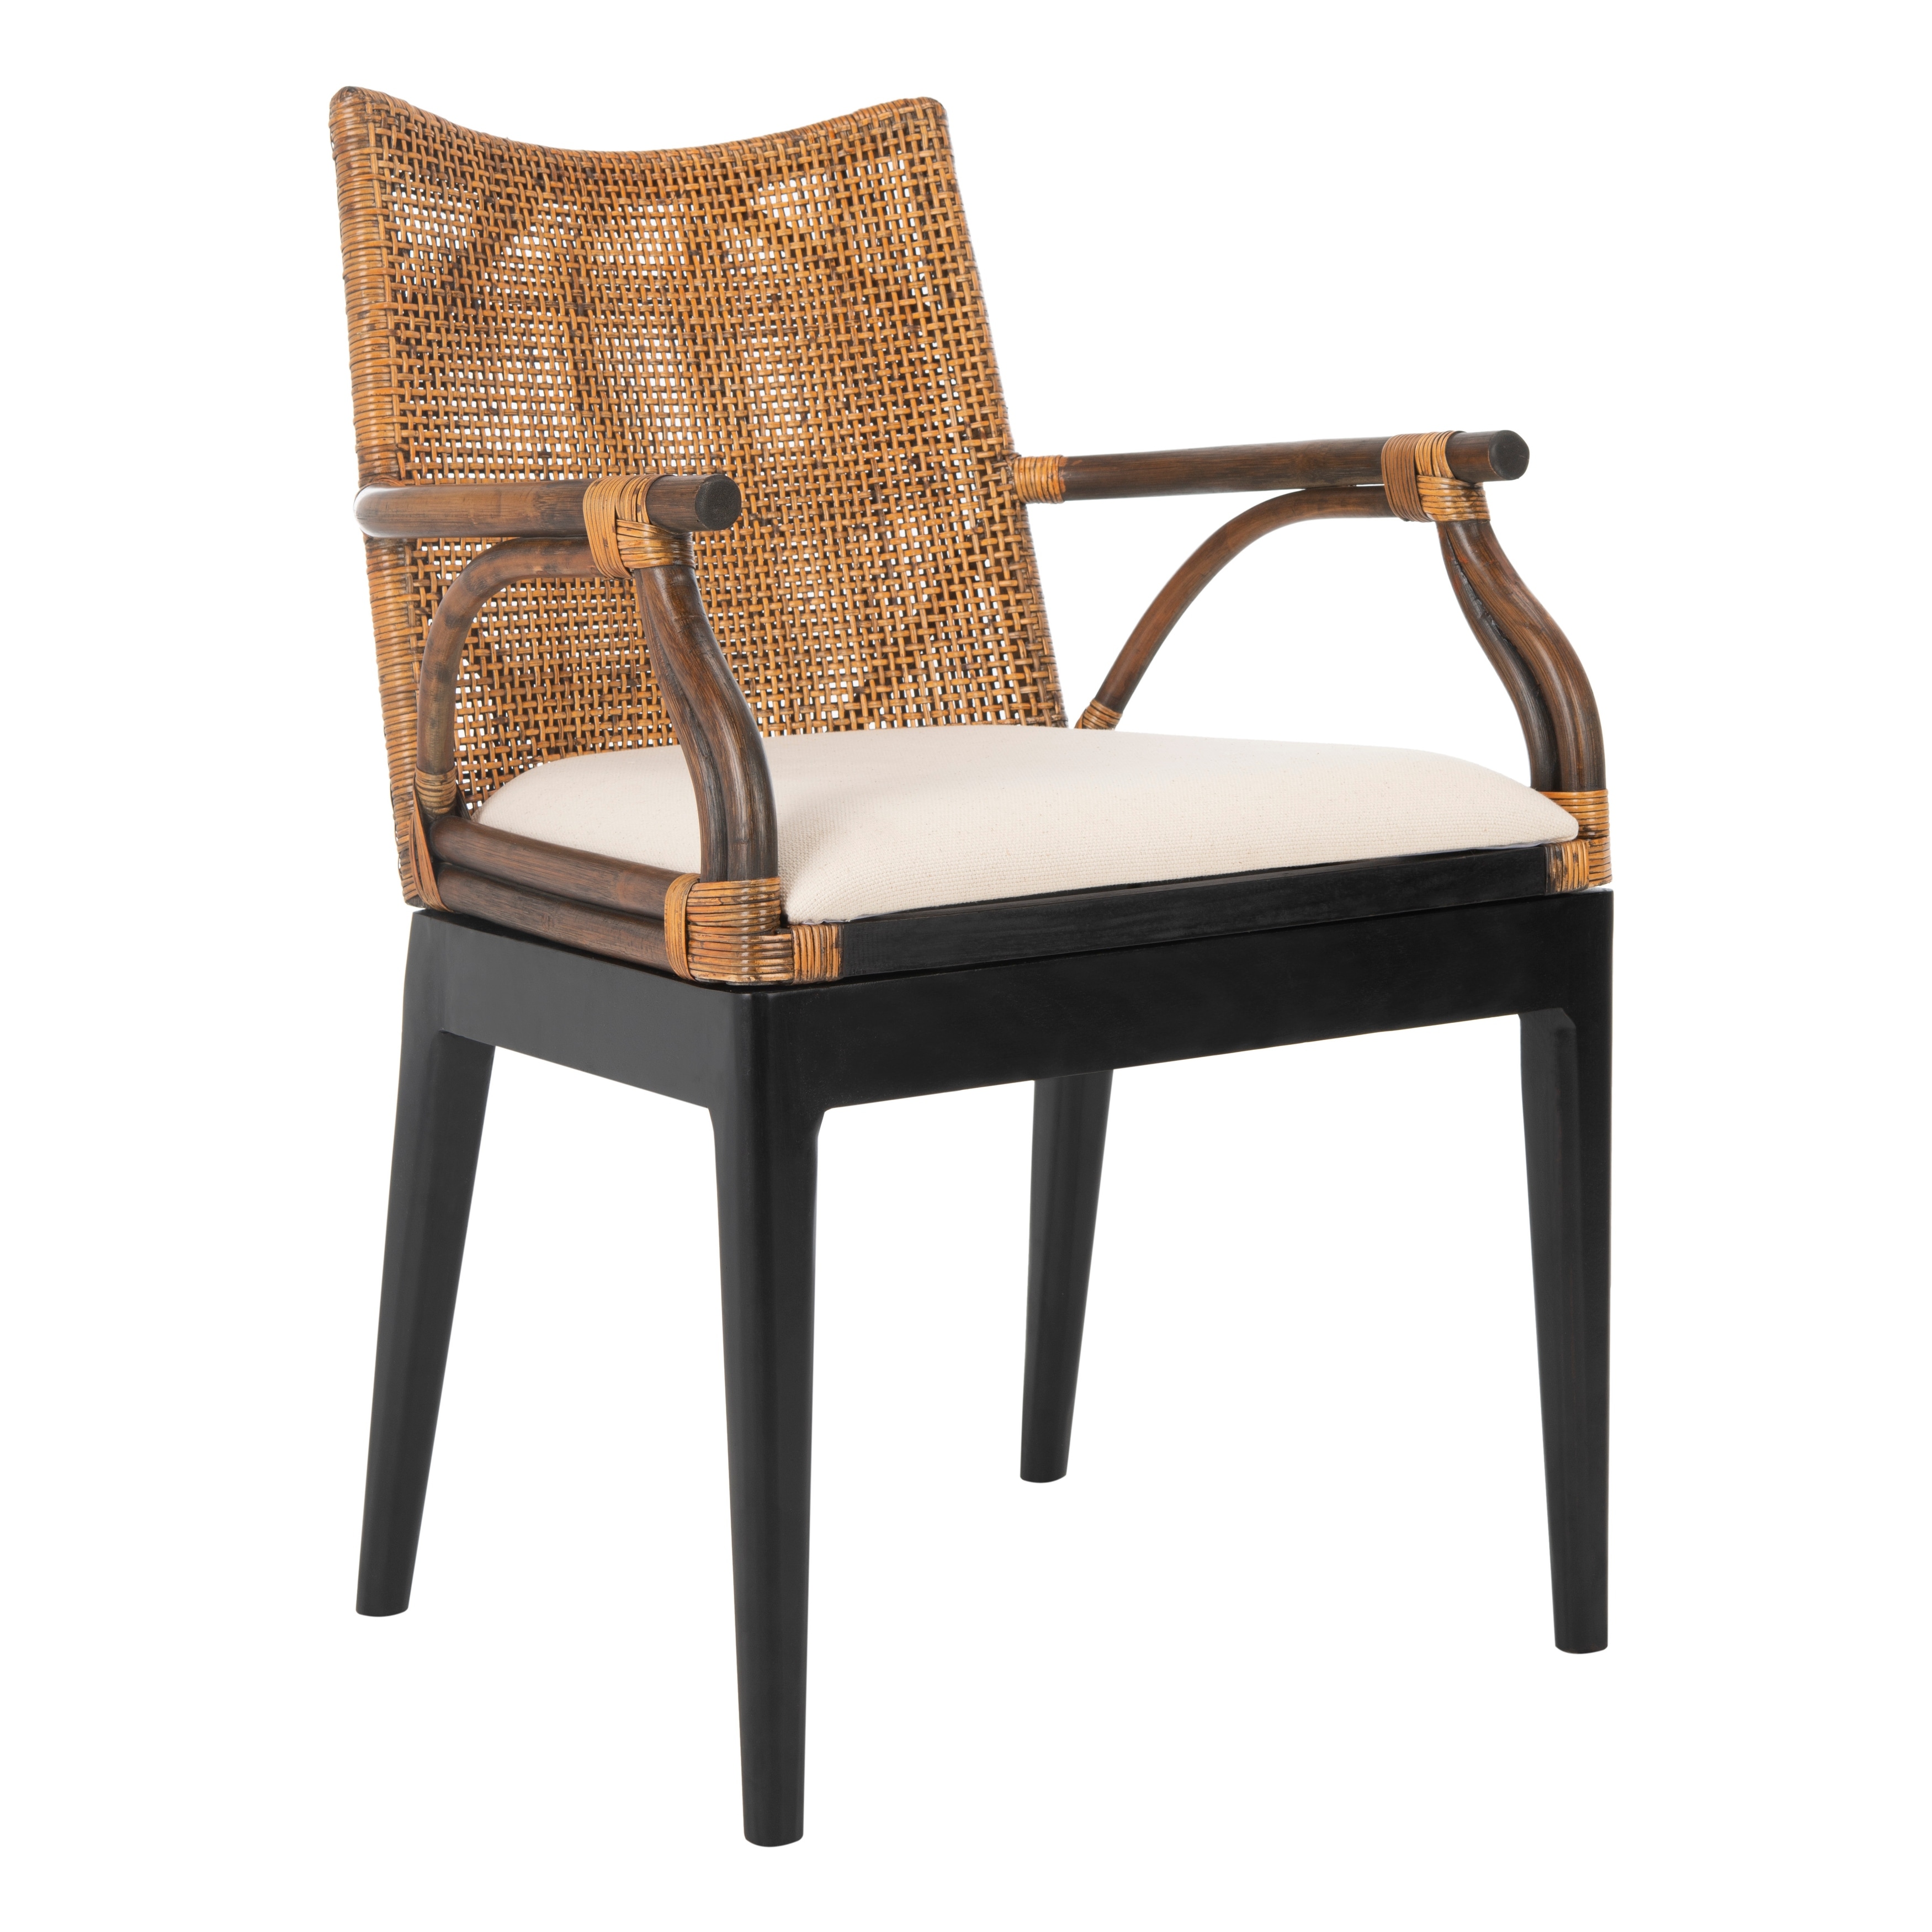 SAFAVIEH Gianni Tropical Coastal Cushion Arm Chair